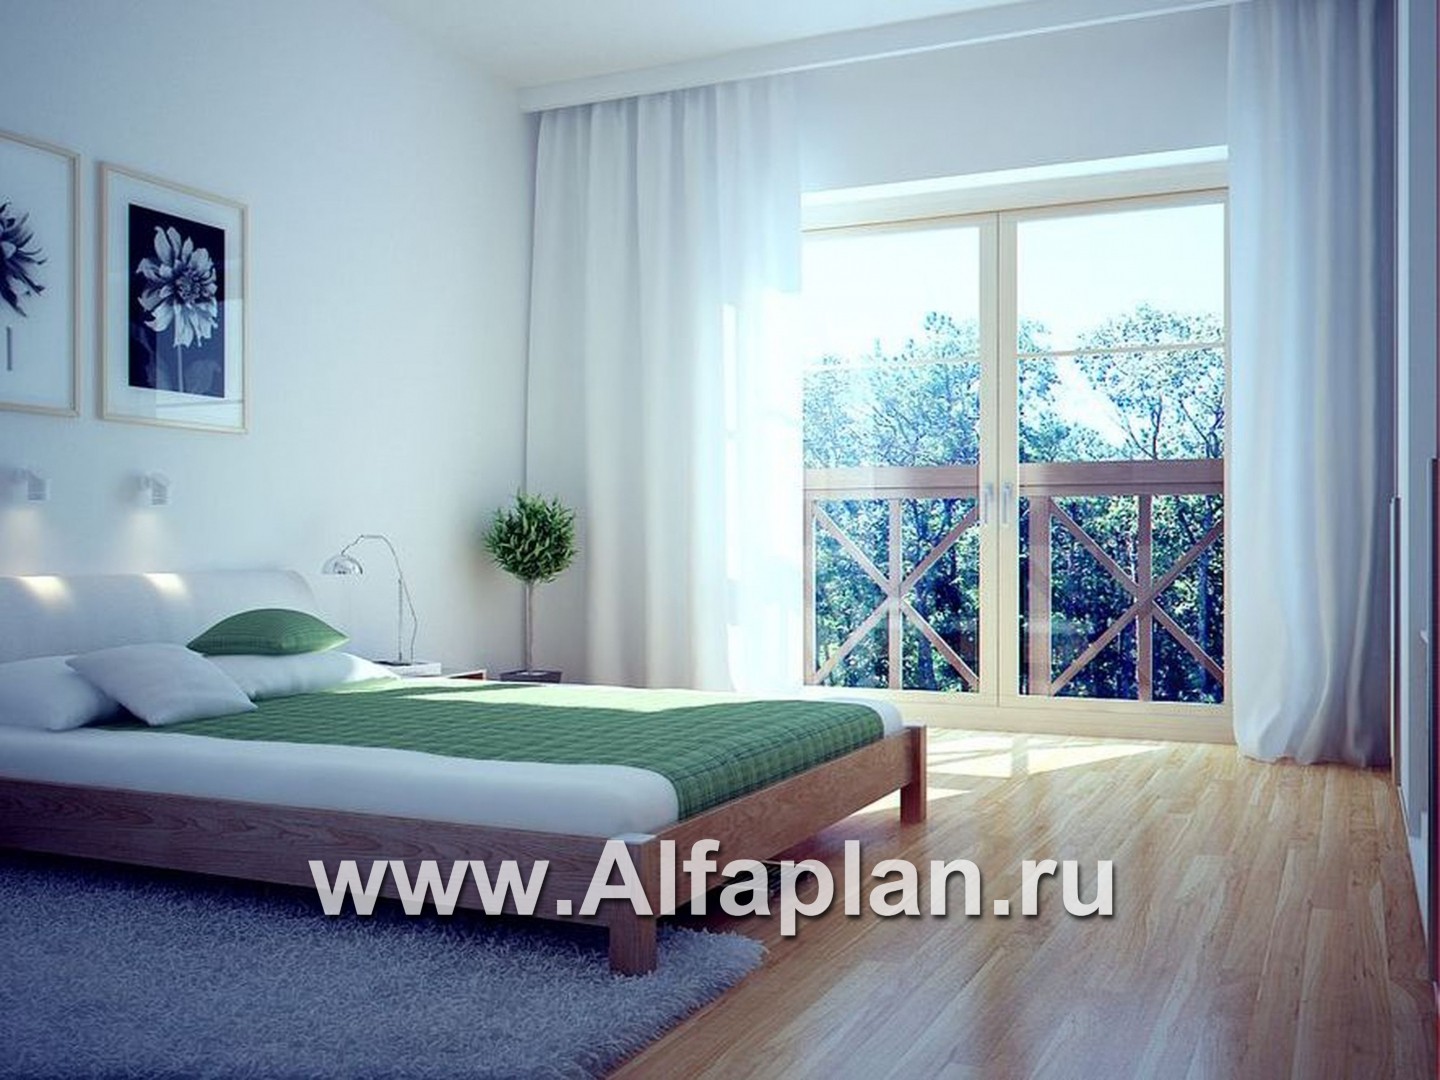 Проекты домов Альфаплан - «Зонненхаус» - коттедж  с солнечной гостиной - дополнительное изображение №4